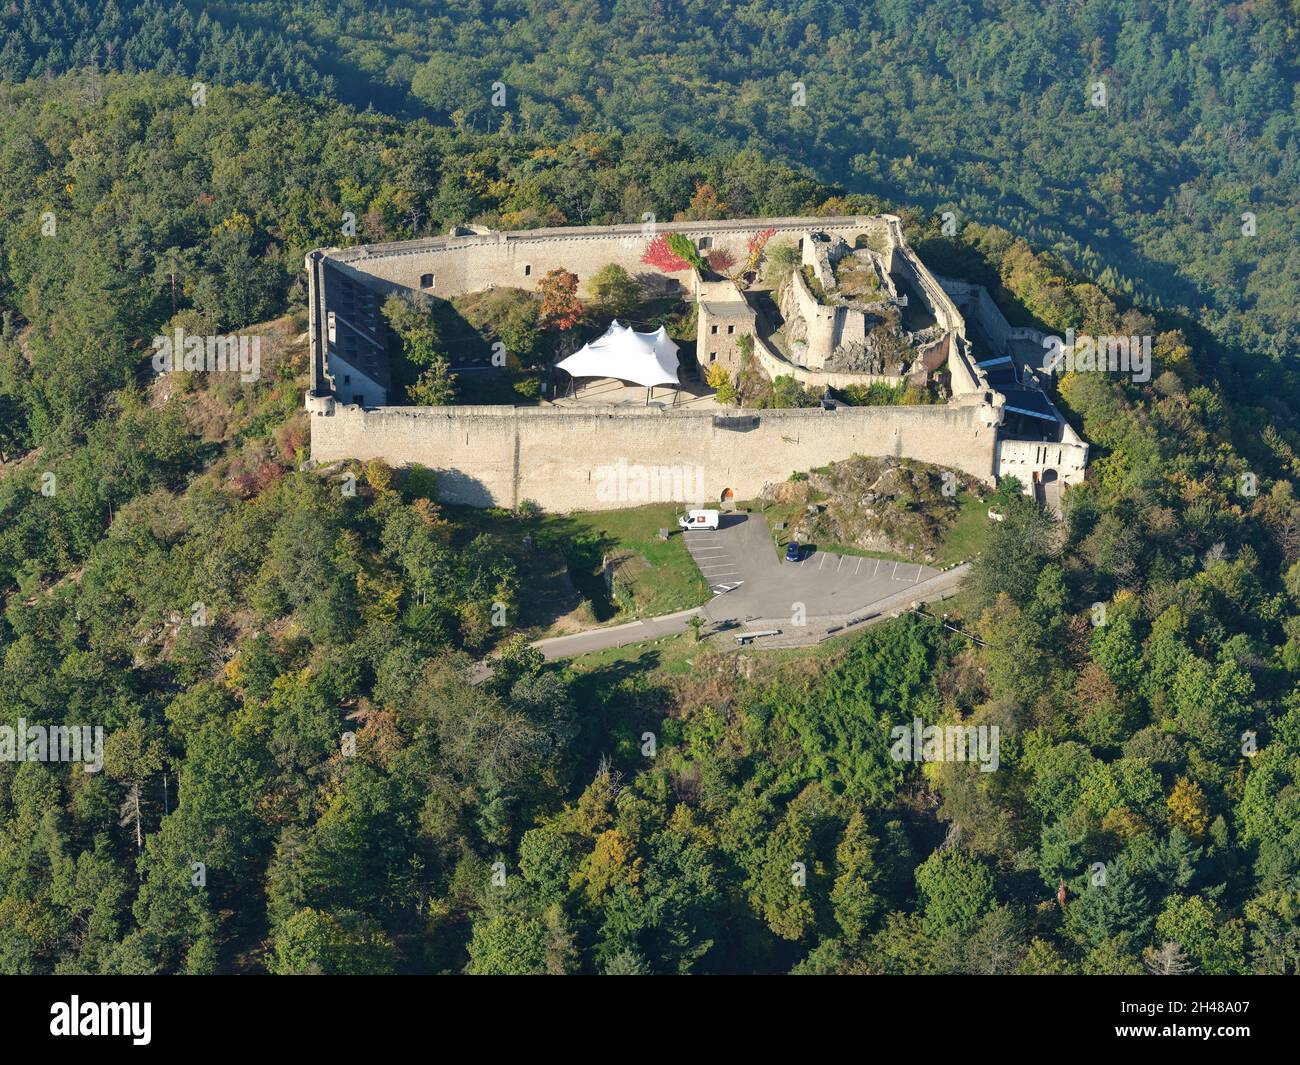 VUE AÉRIENNE.Château médiéval sur une colline dans les Vosges orientales.Château de Hohlandsbourg, Wintzenheim, Haut-Rhin, Alsace, Grand est,France. Banque D'Images